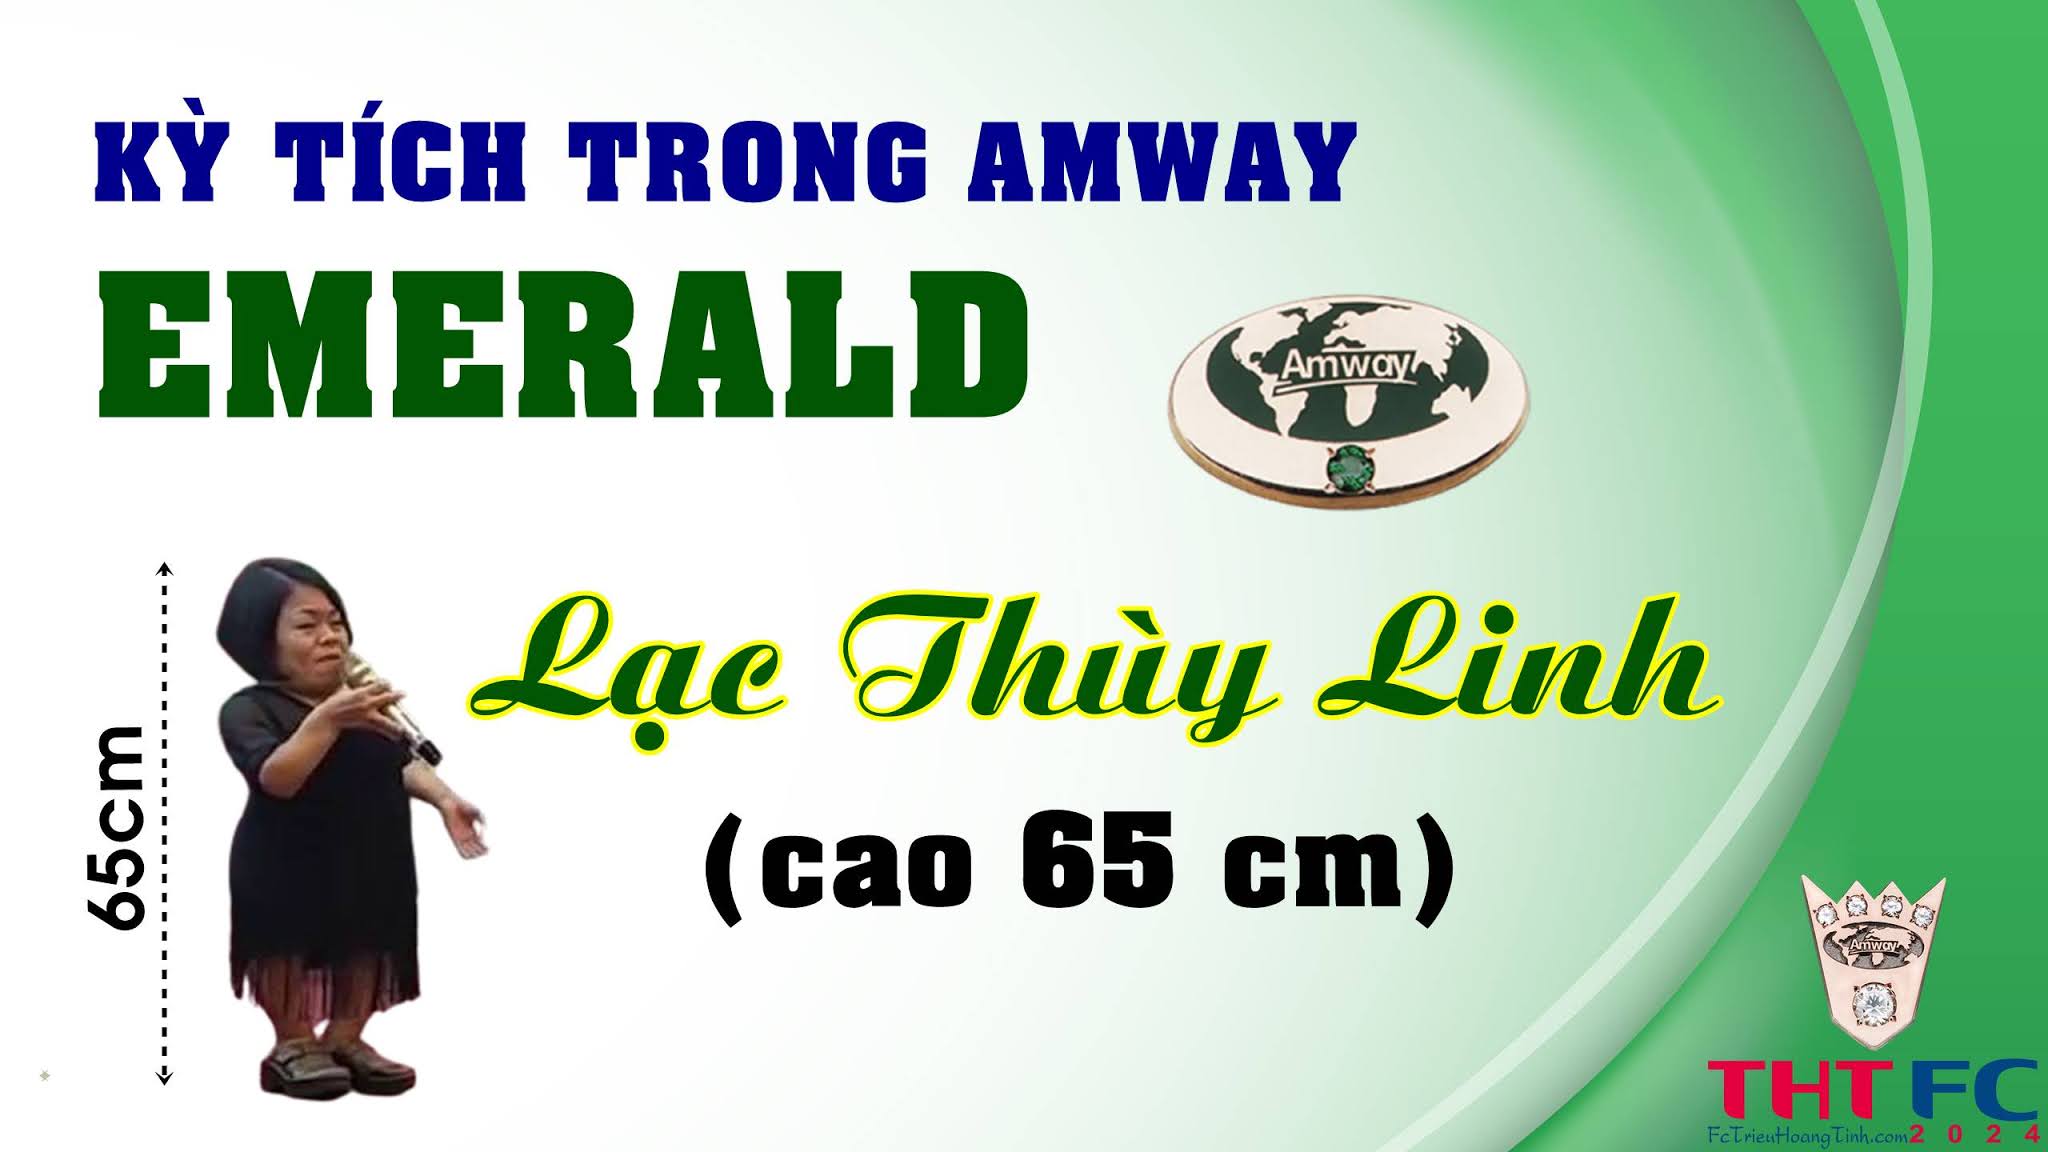 Emerald Lạc Thúy Linh (cao 65cm) và kỳ tích tại Amway với những người dưới mức bình thường